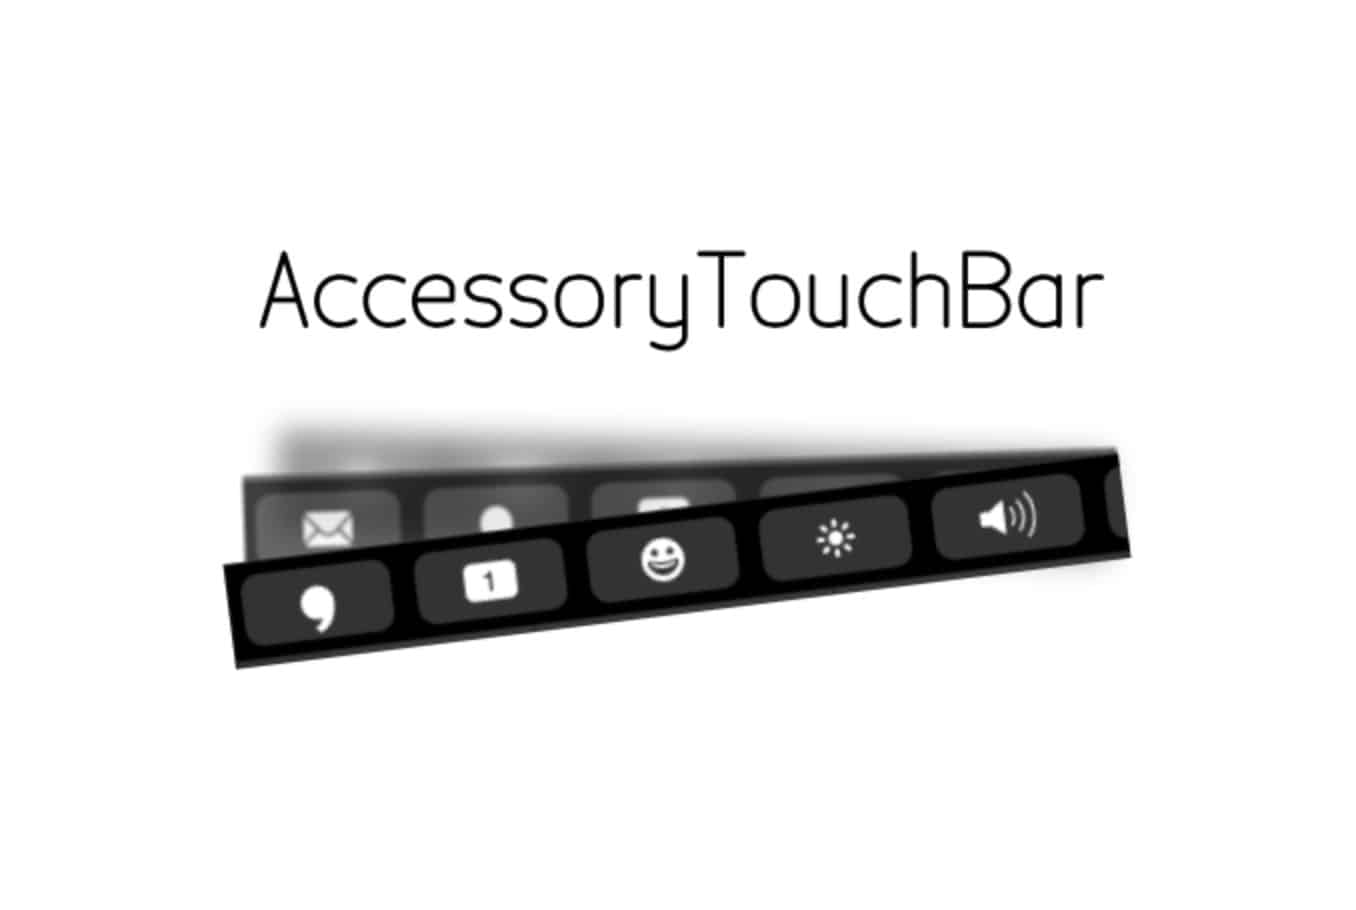 TouchBar concept